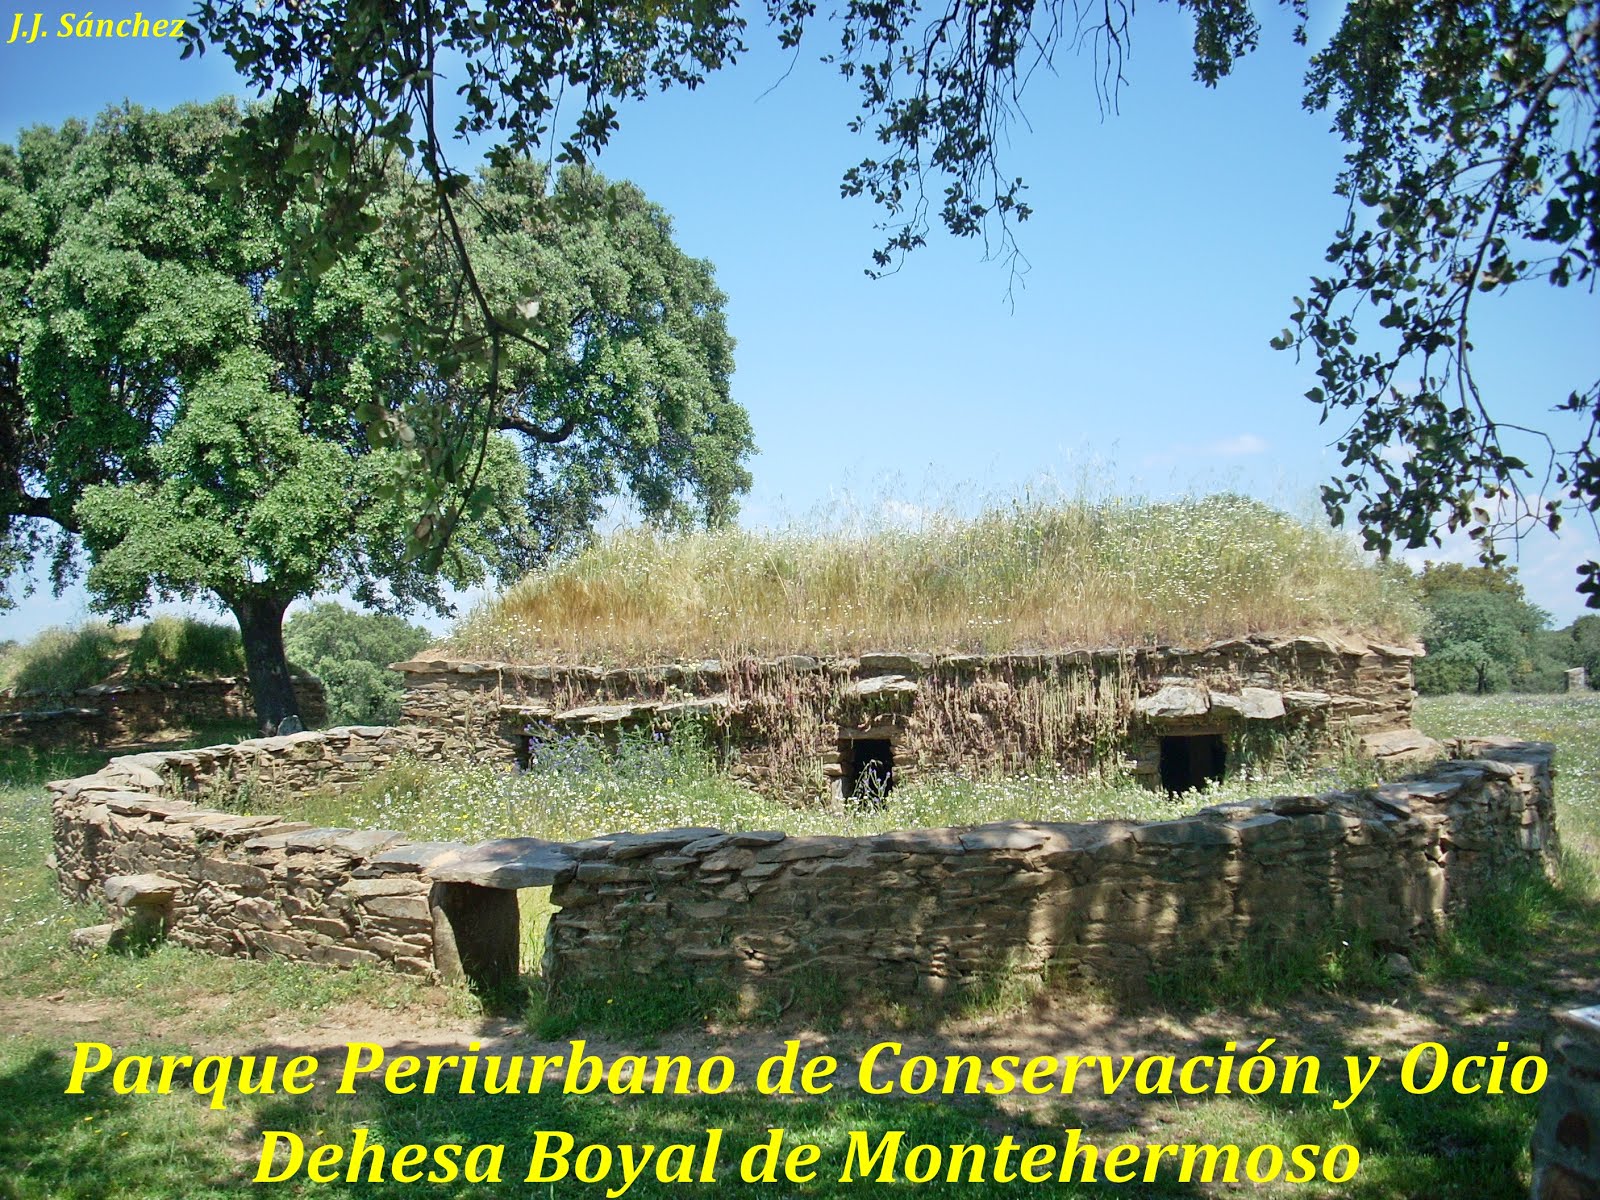 Parque Periurbano de Conservación y Ocio “Dehesa Boyal de Montehermoso”